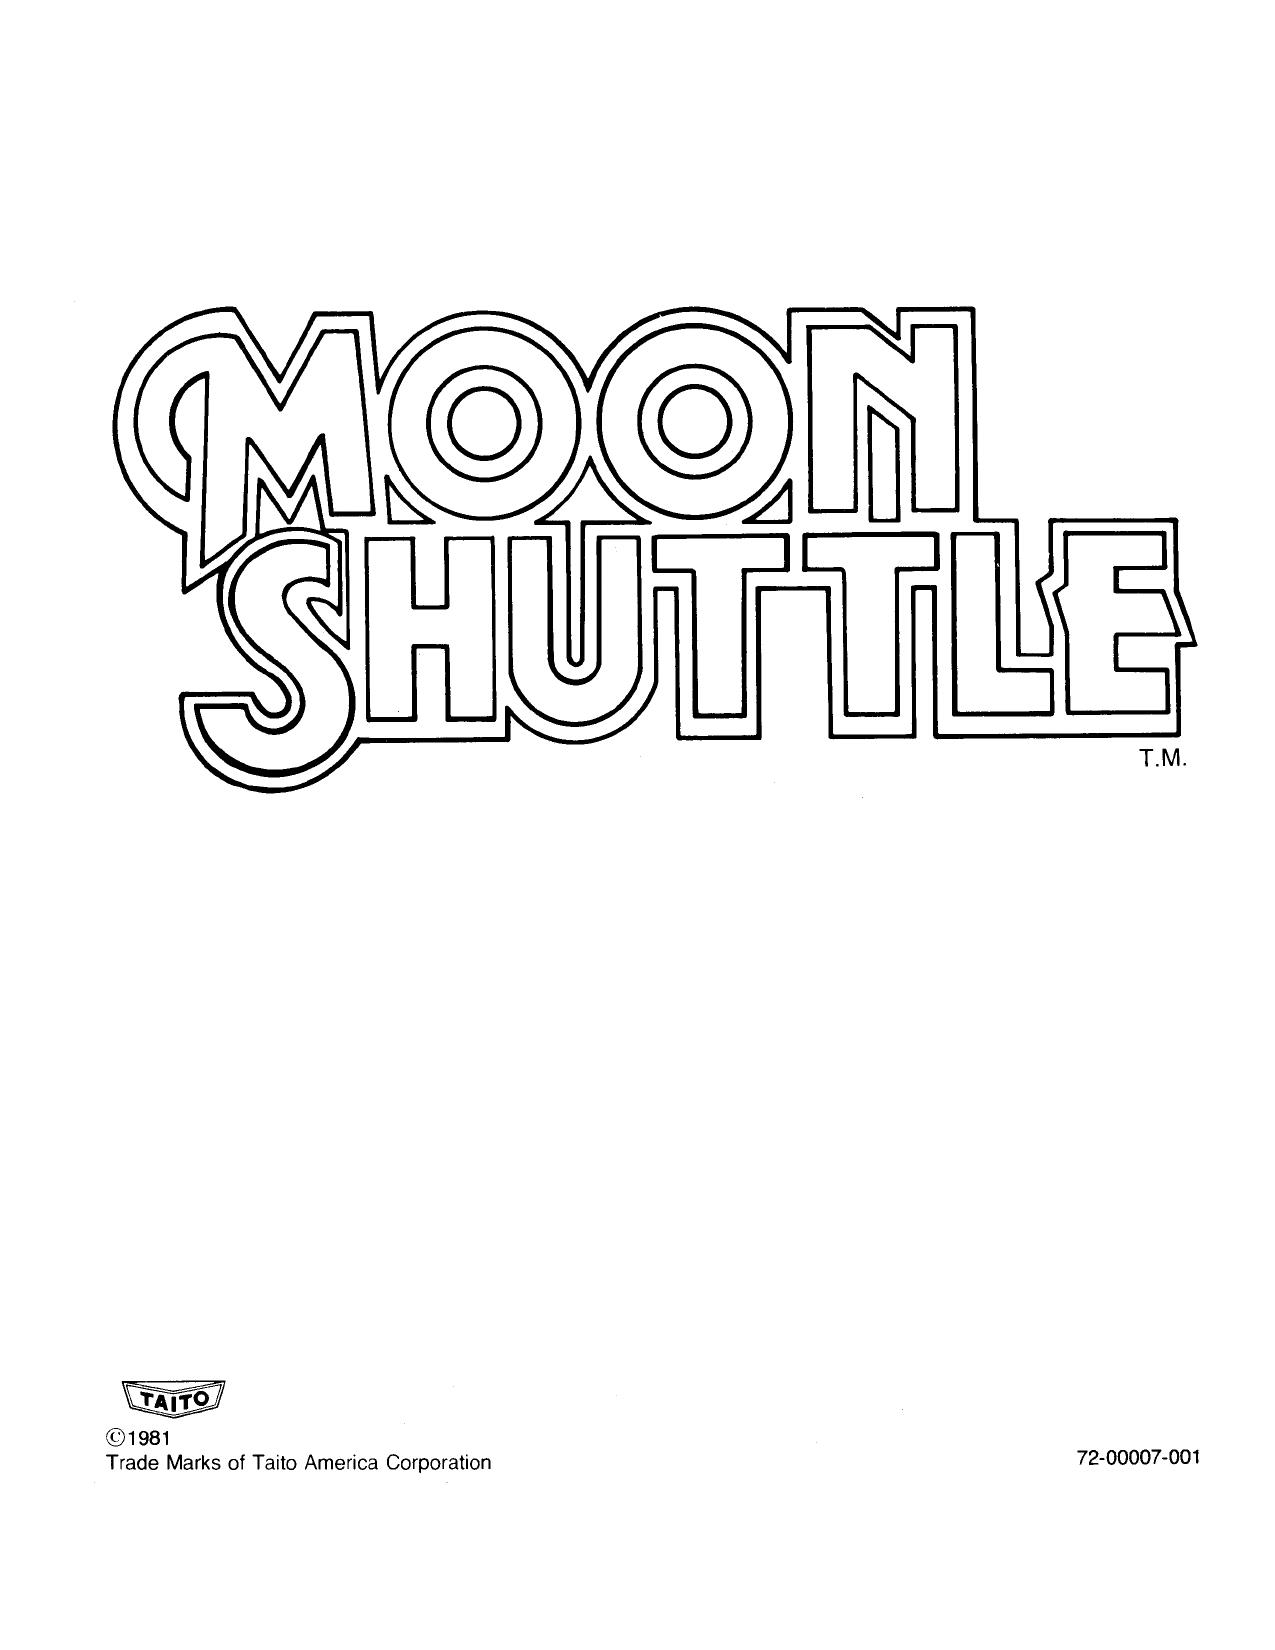 Moon Shuttle (Taito)